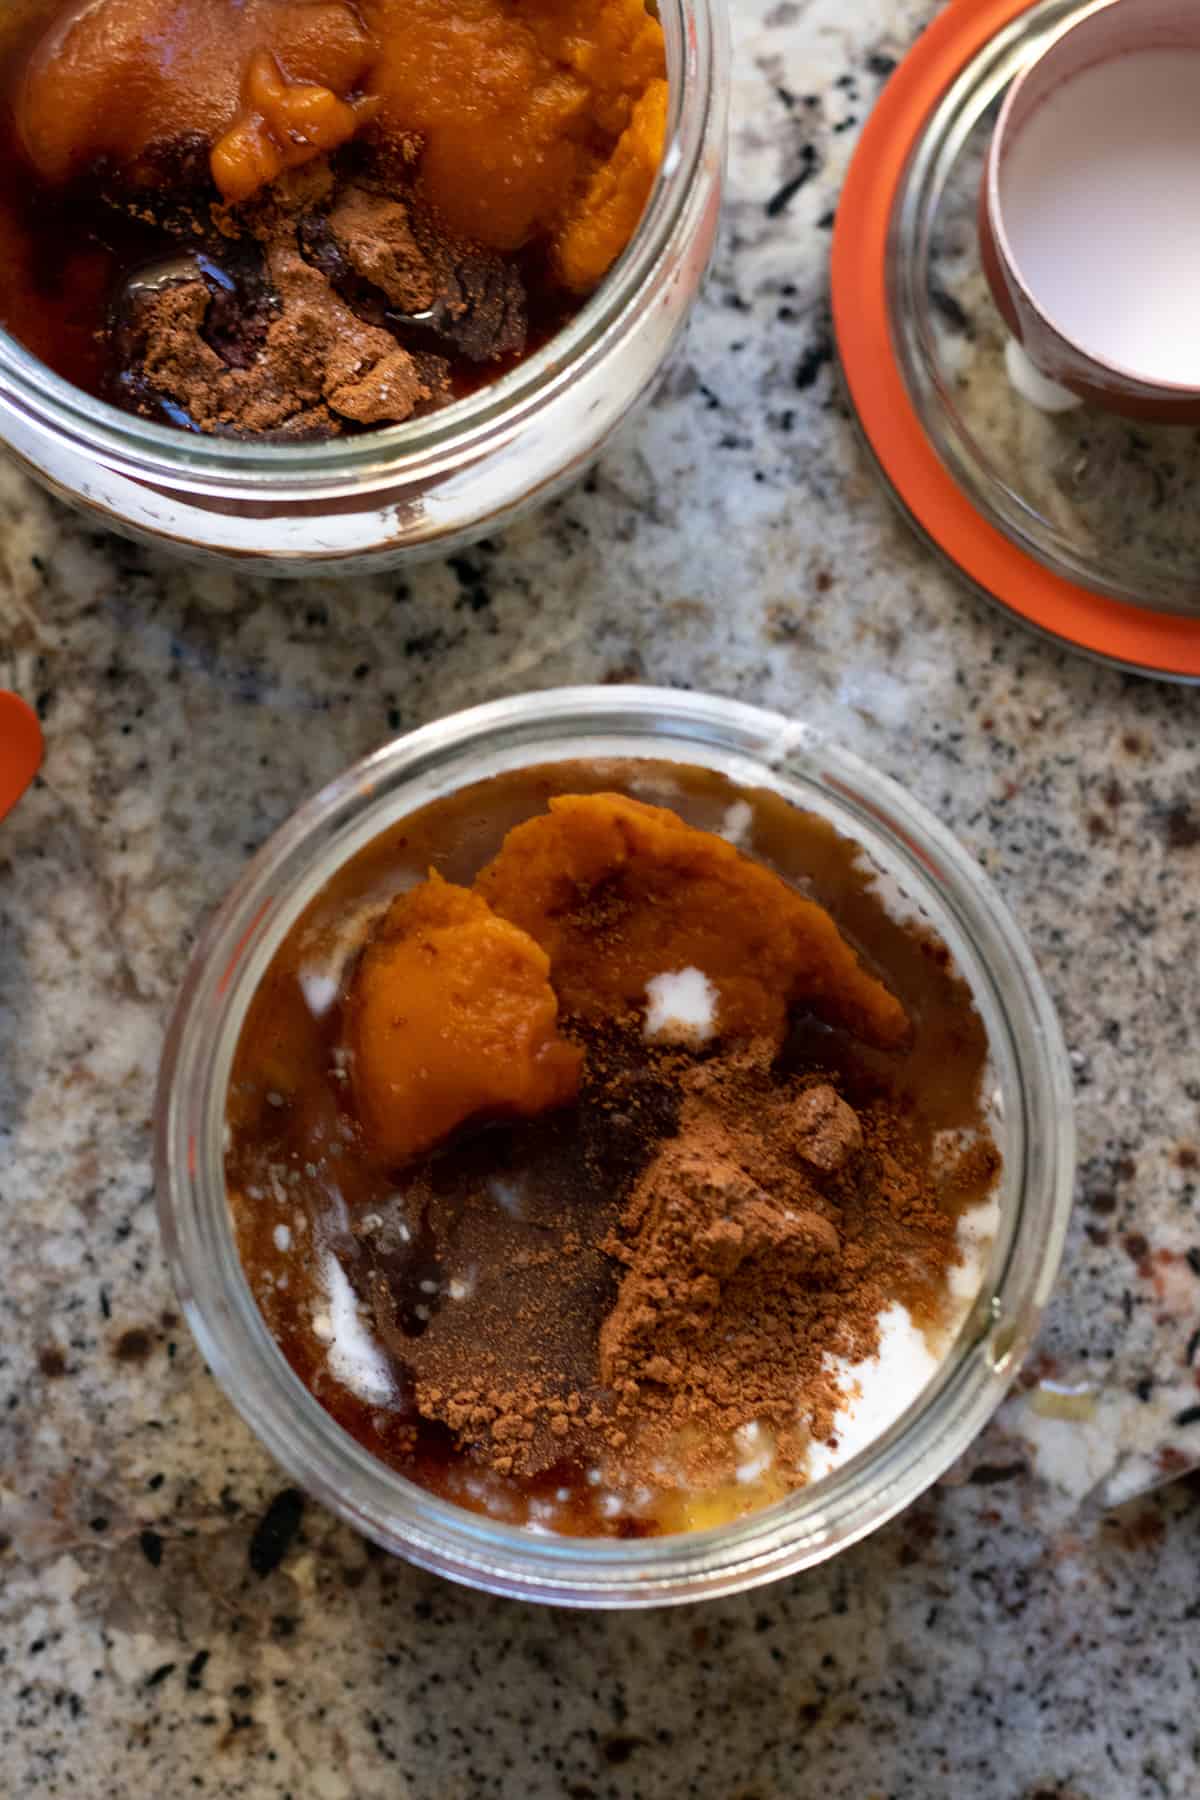 preparing pumpkin pudding ingredients in glass jar on kitchen counter